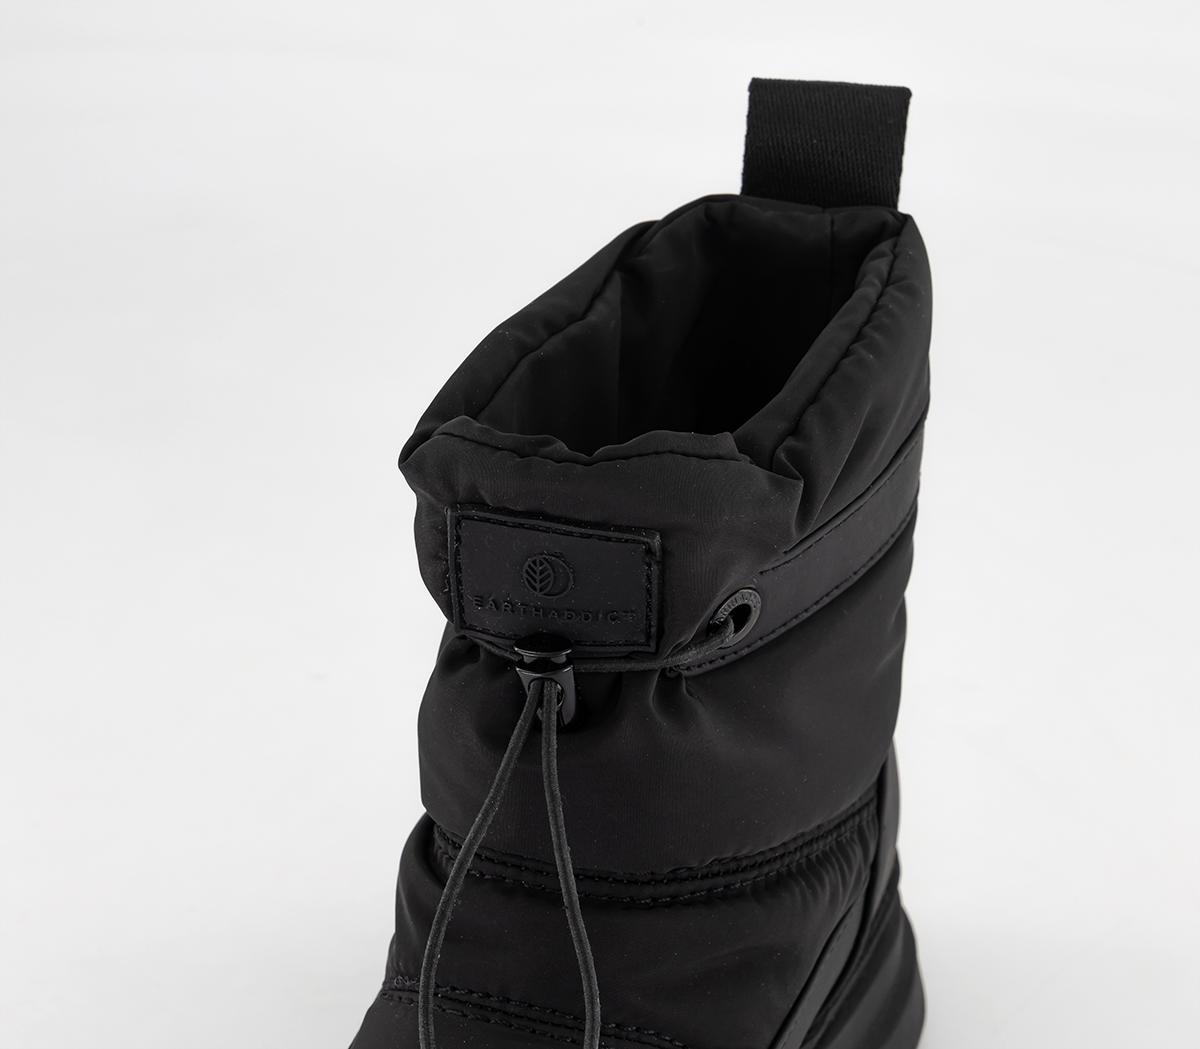 EARTHADDICT Jordan Snow Boots Black - Women’s Flat Boots